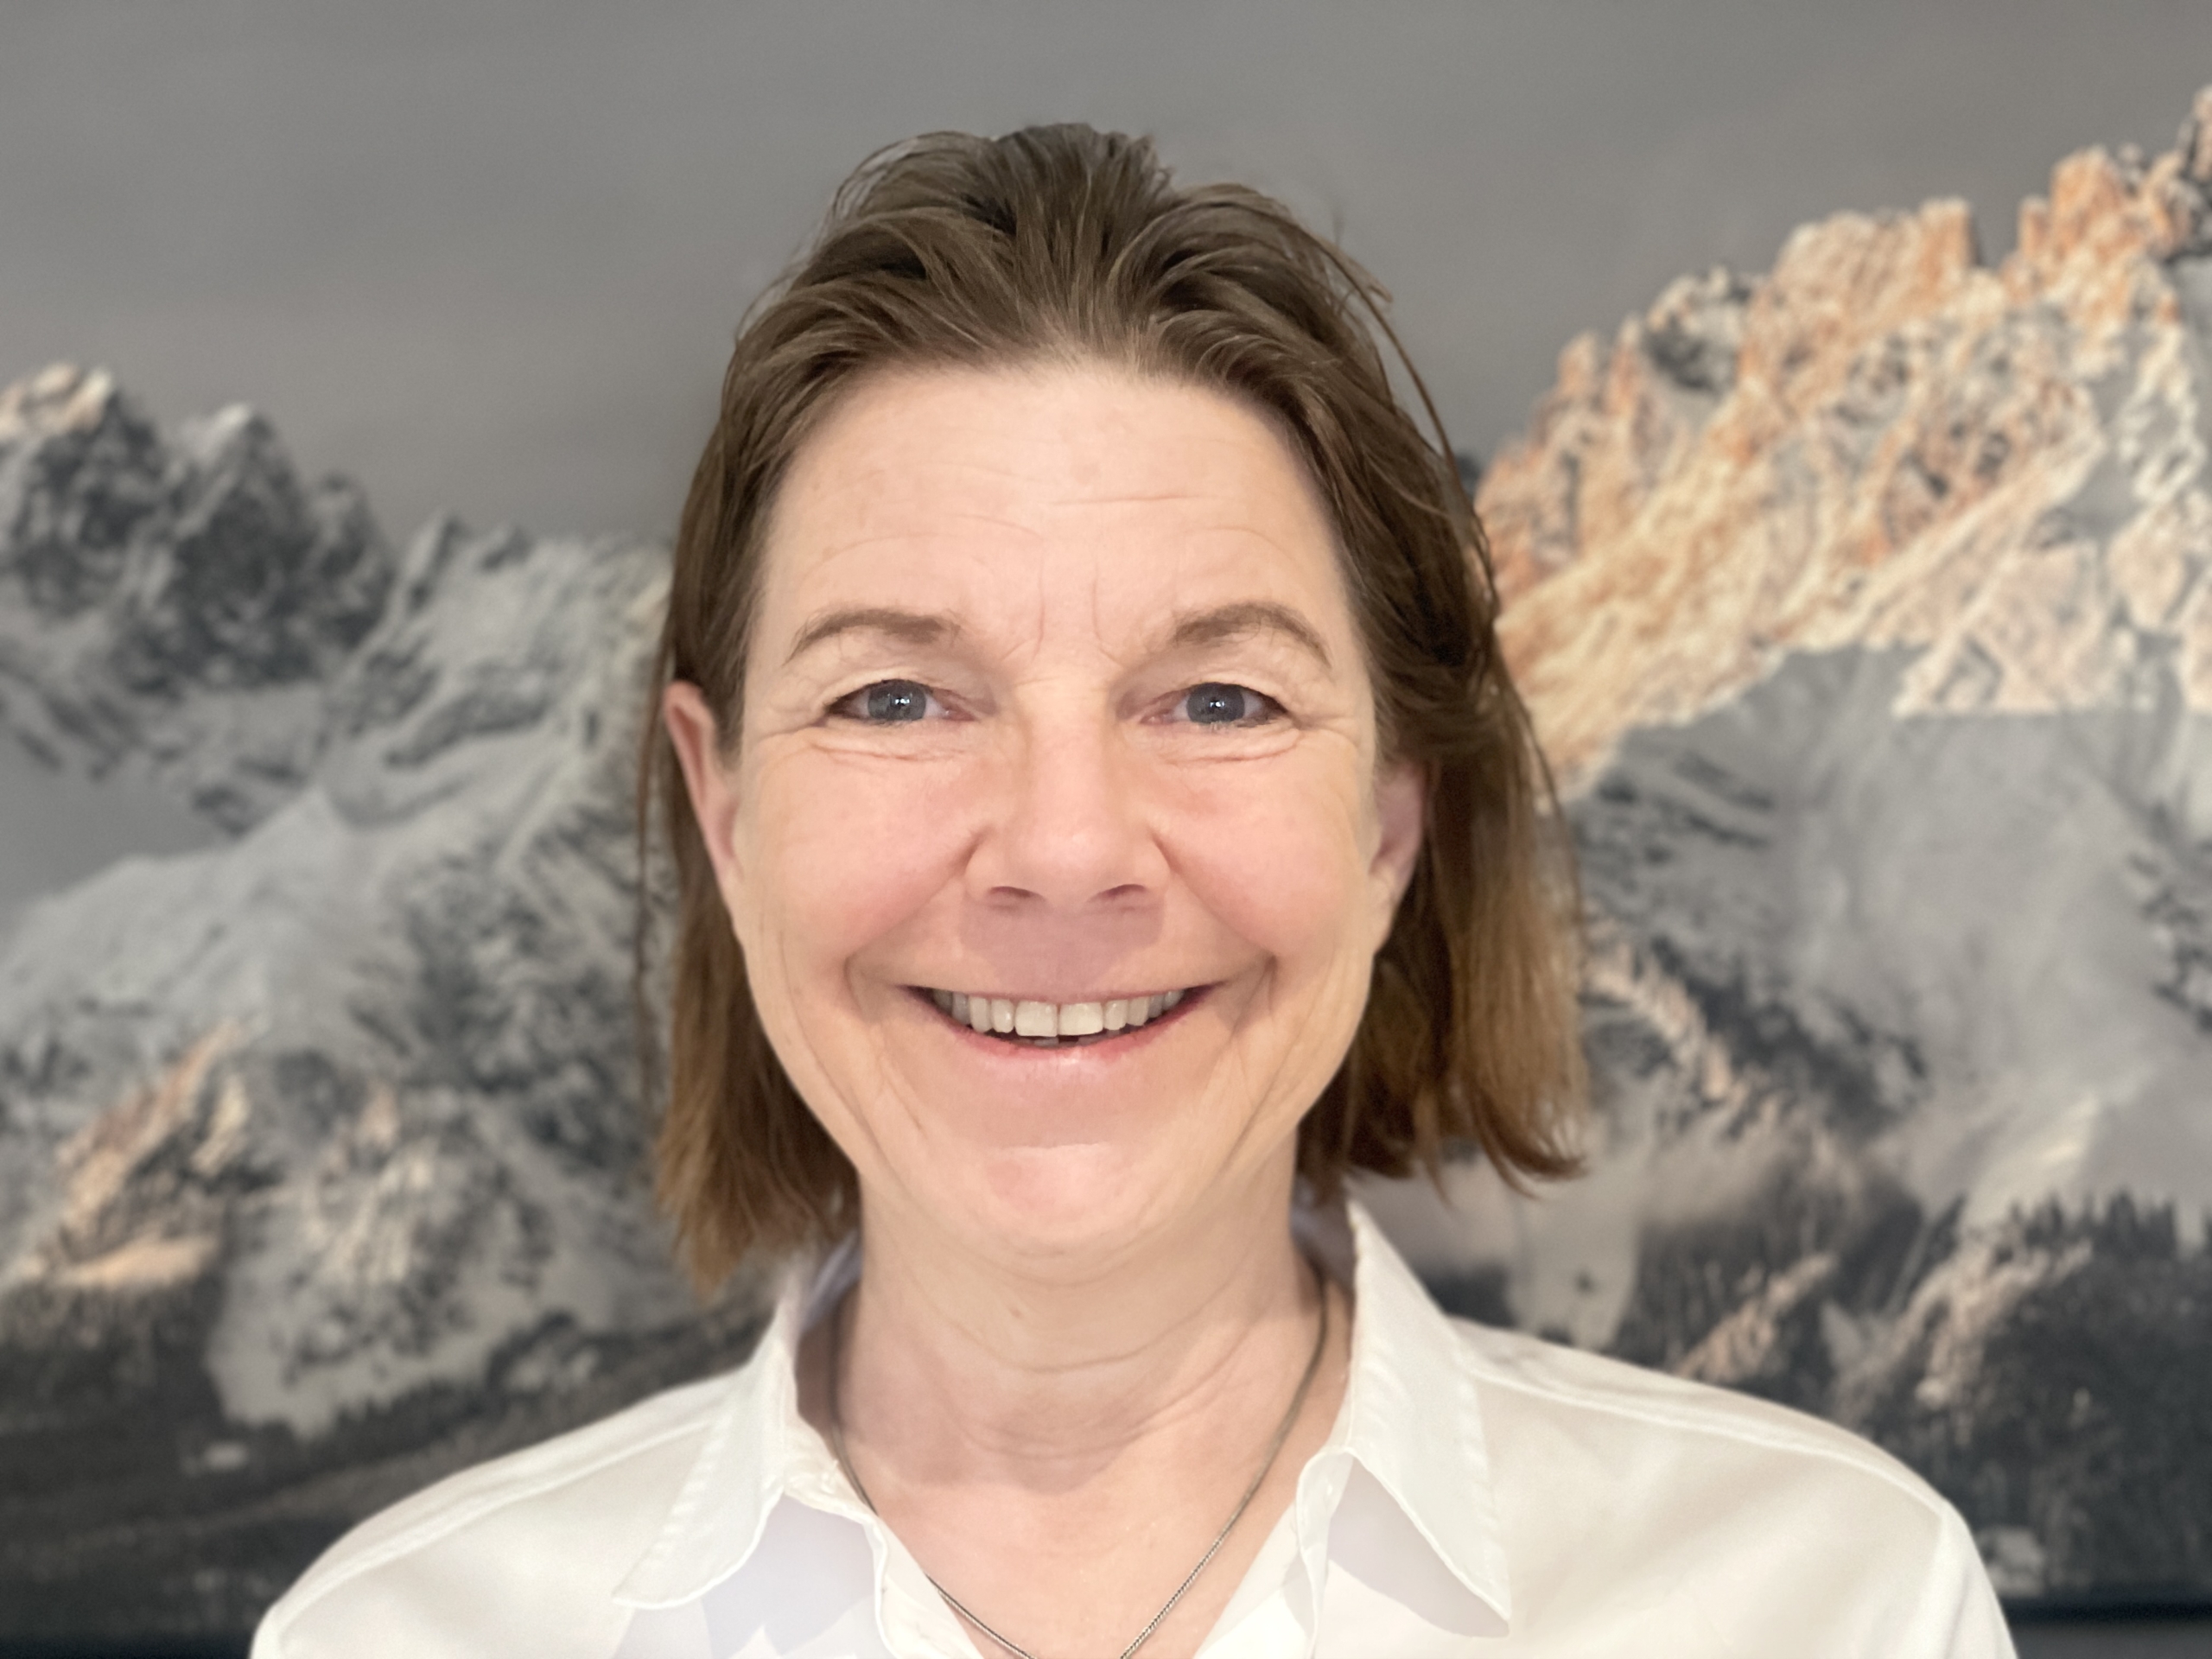 Ariane Pipke begleitet das Programm als erfahrene Management Beraterin und Executive Coach mit großer Leidenschaft für die Berge!